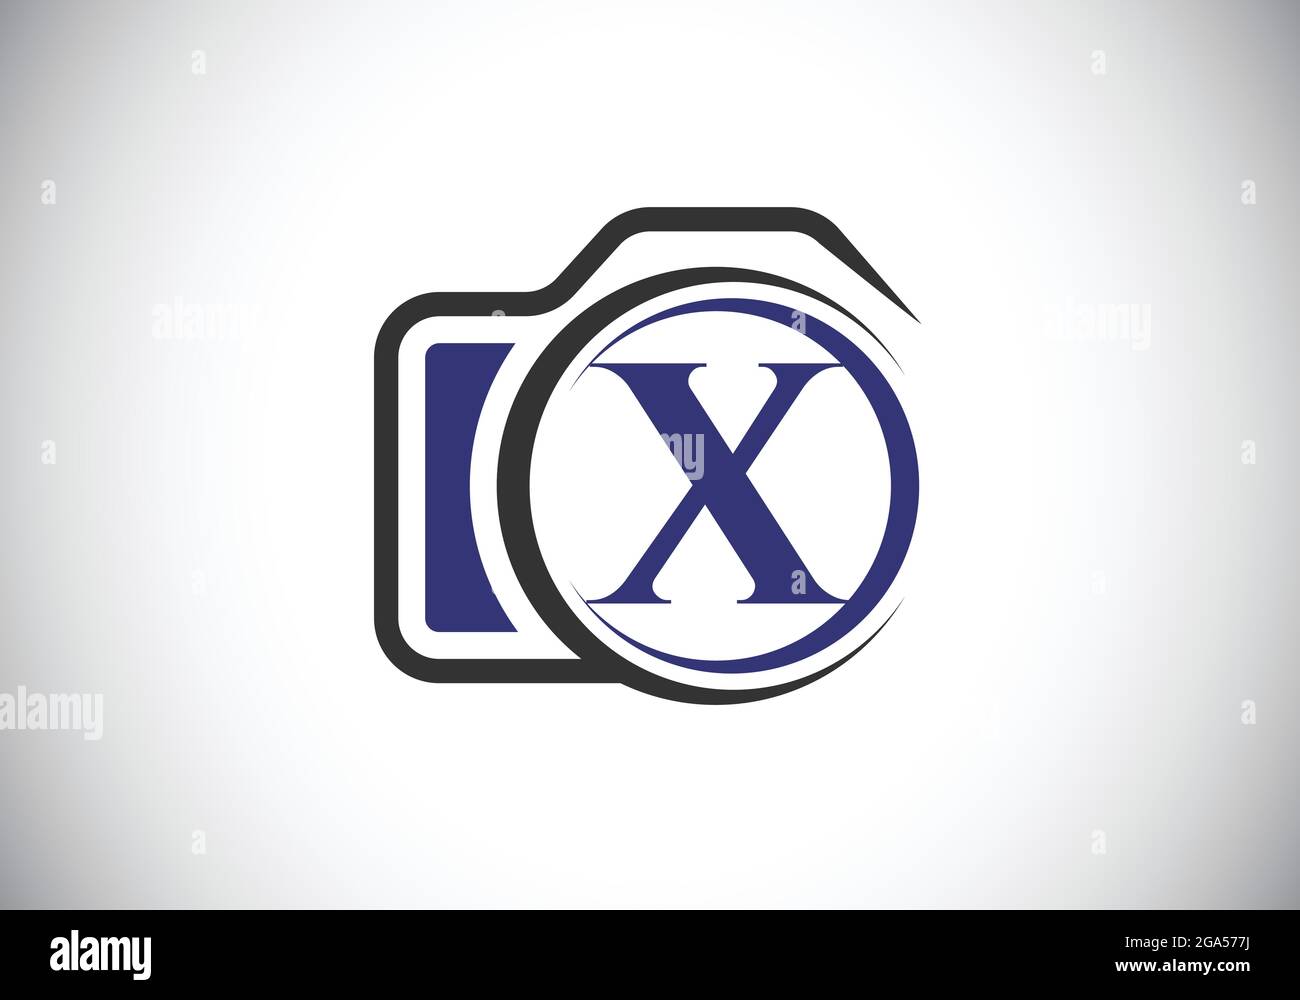 Lettera iniziale del monogramma X con l'icona di una telecamera. Immagine vettoriale del logo fotografico. Design moderno del logo per il settore della fotografia e l'azienda Illustrazione Vettoriale